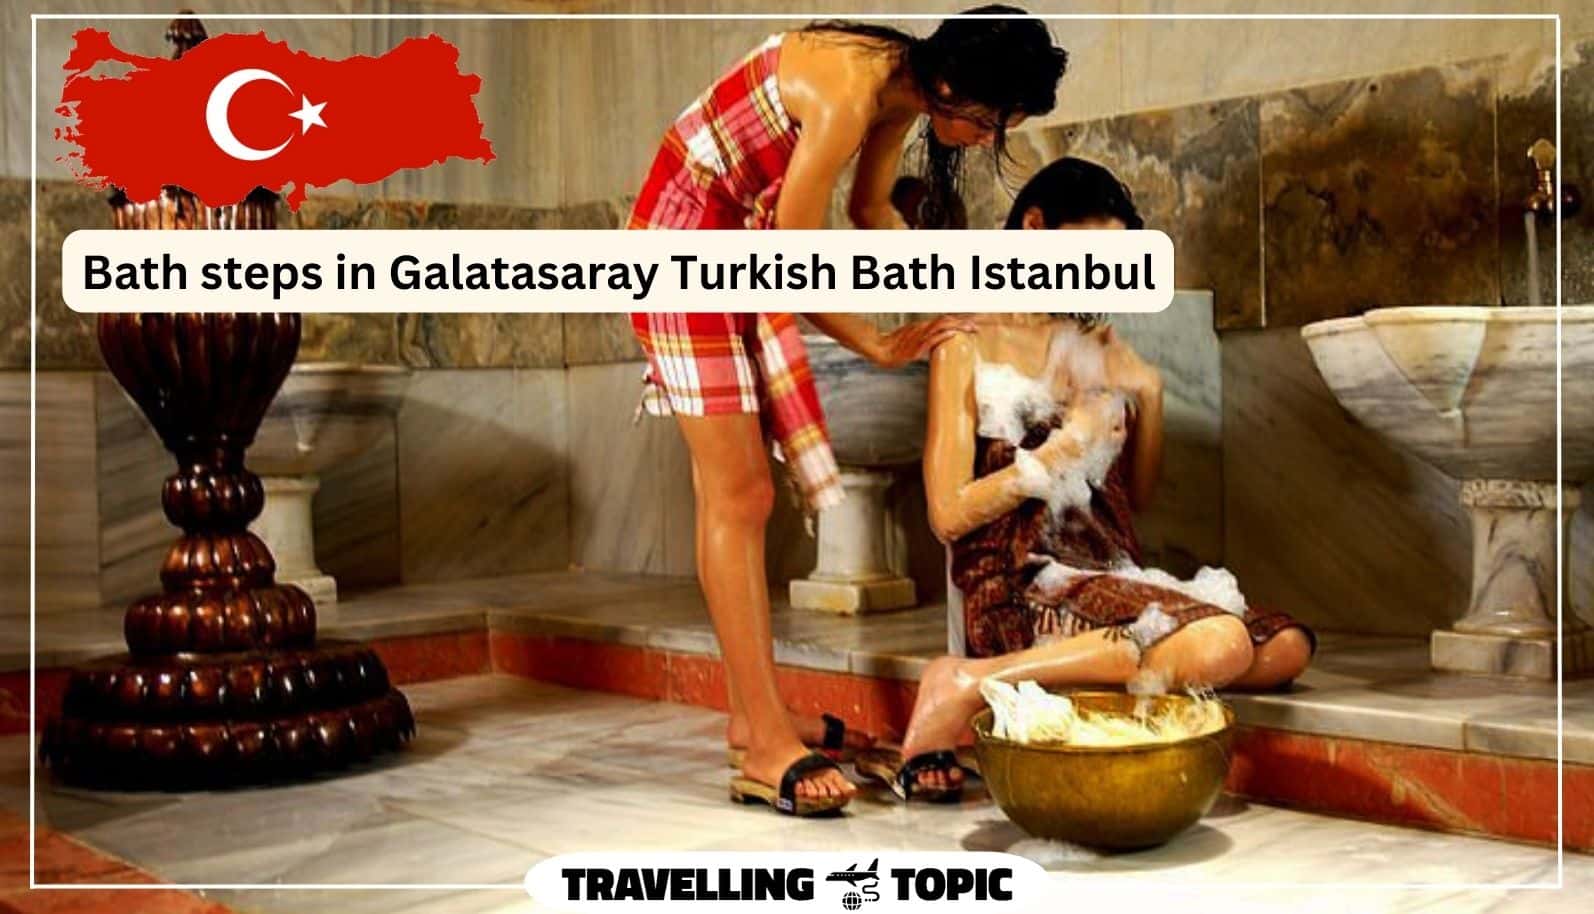 Bath steps in Galatasaray Turkish Bath Istanbul